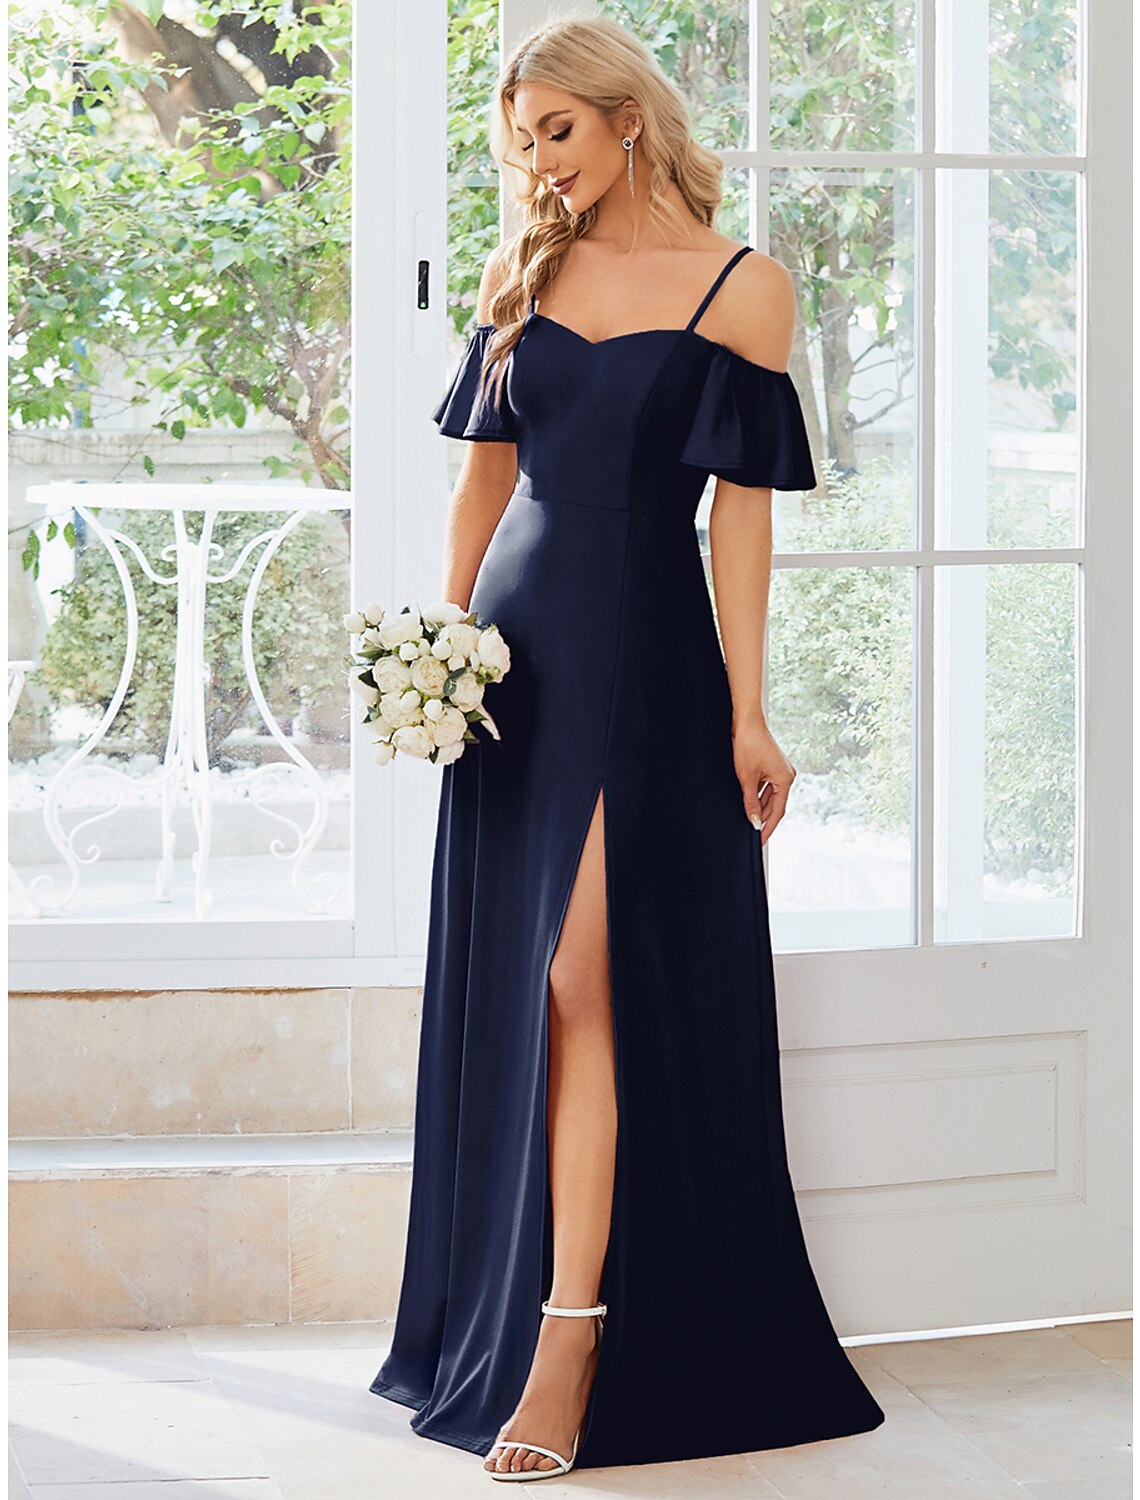 A-Line Wedding Guest Dresses Elegant Dress Formal Floor Length Short Sleeve Off Shoulder Stretch Fabric with Slit Pure Color